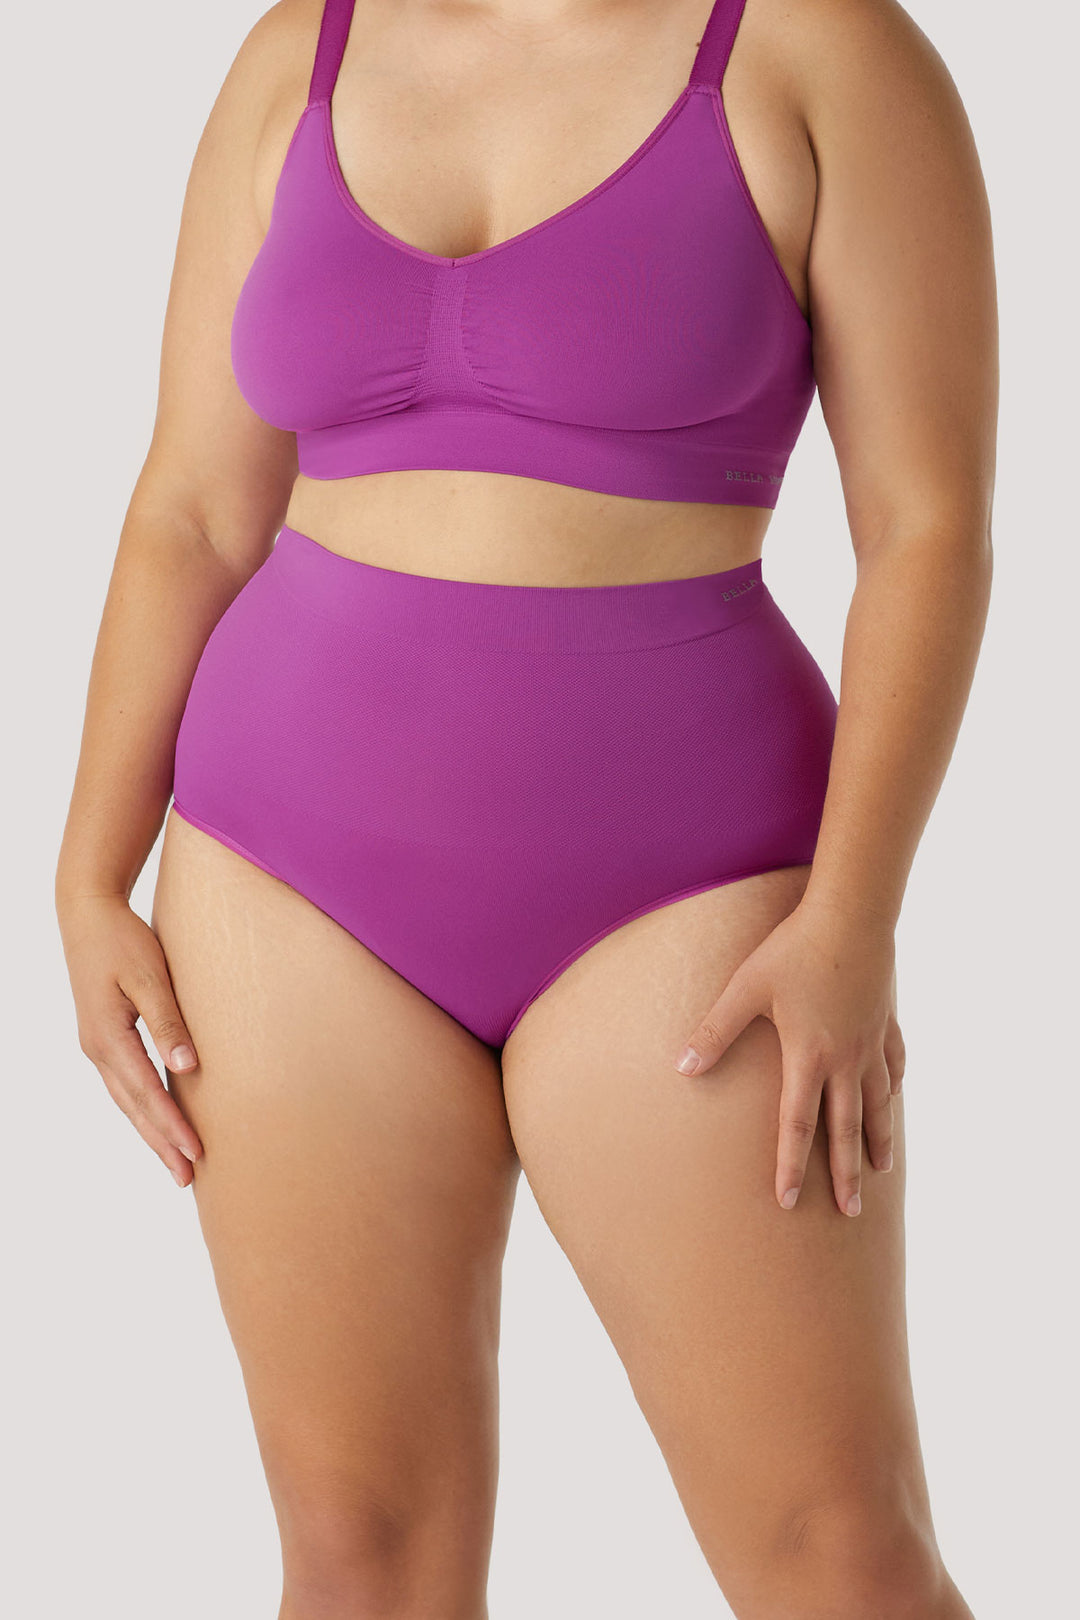 Women's slimming & firming high Waist underwear 2 Pack | Bella Bodies Australia | Viola | Front